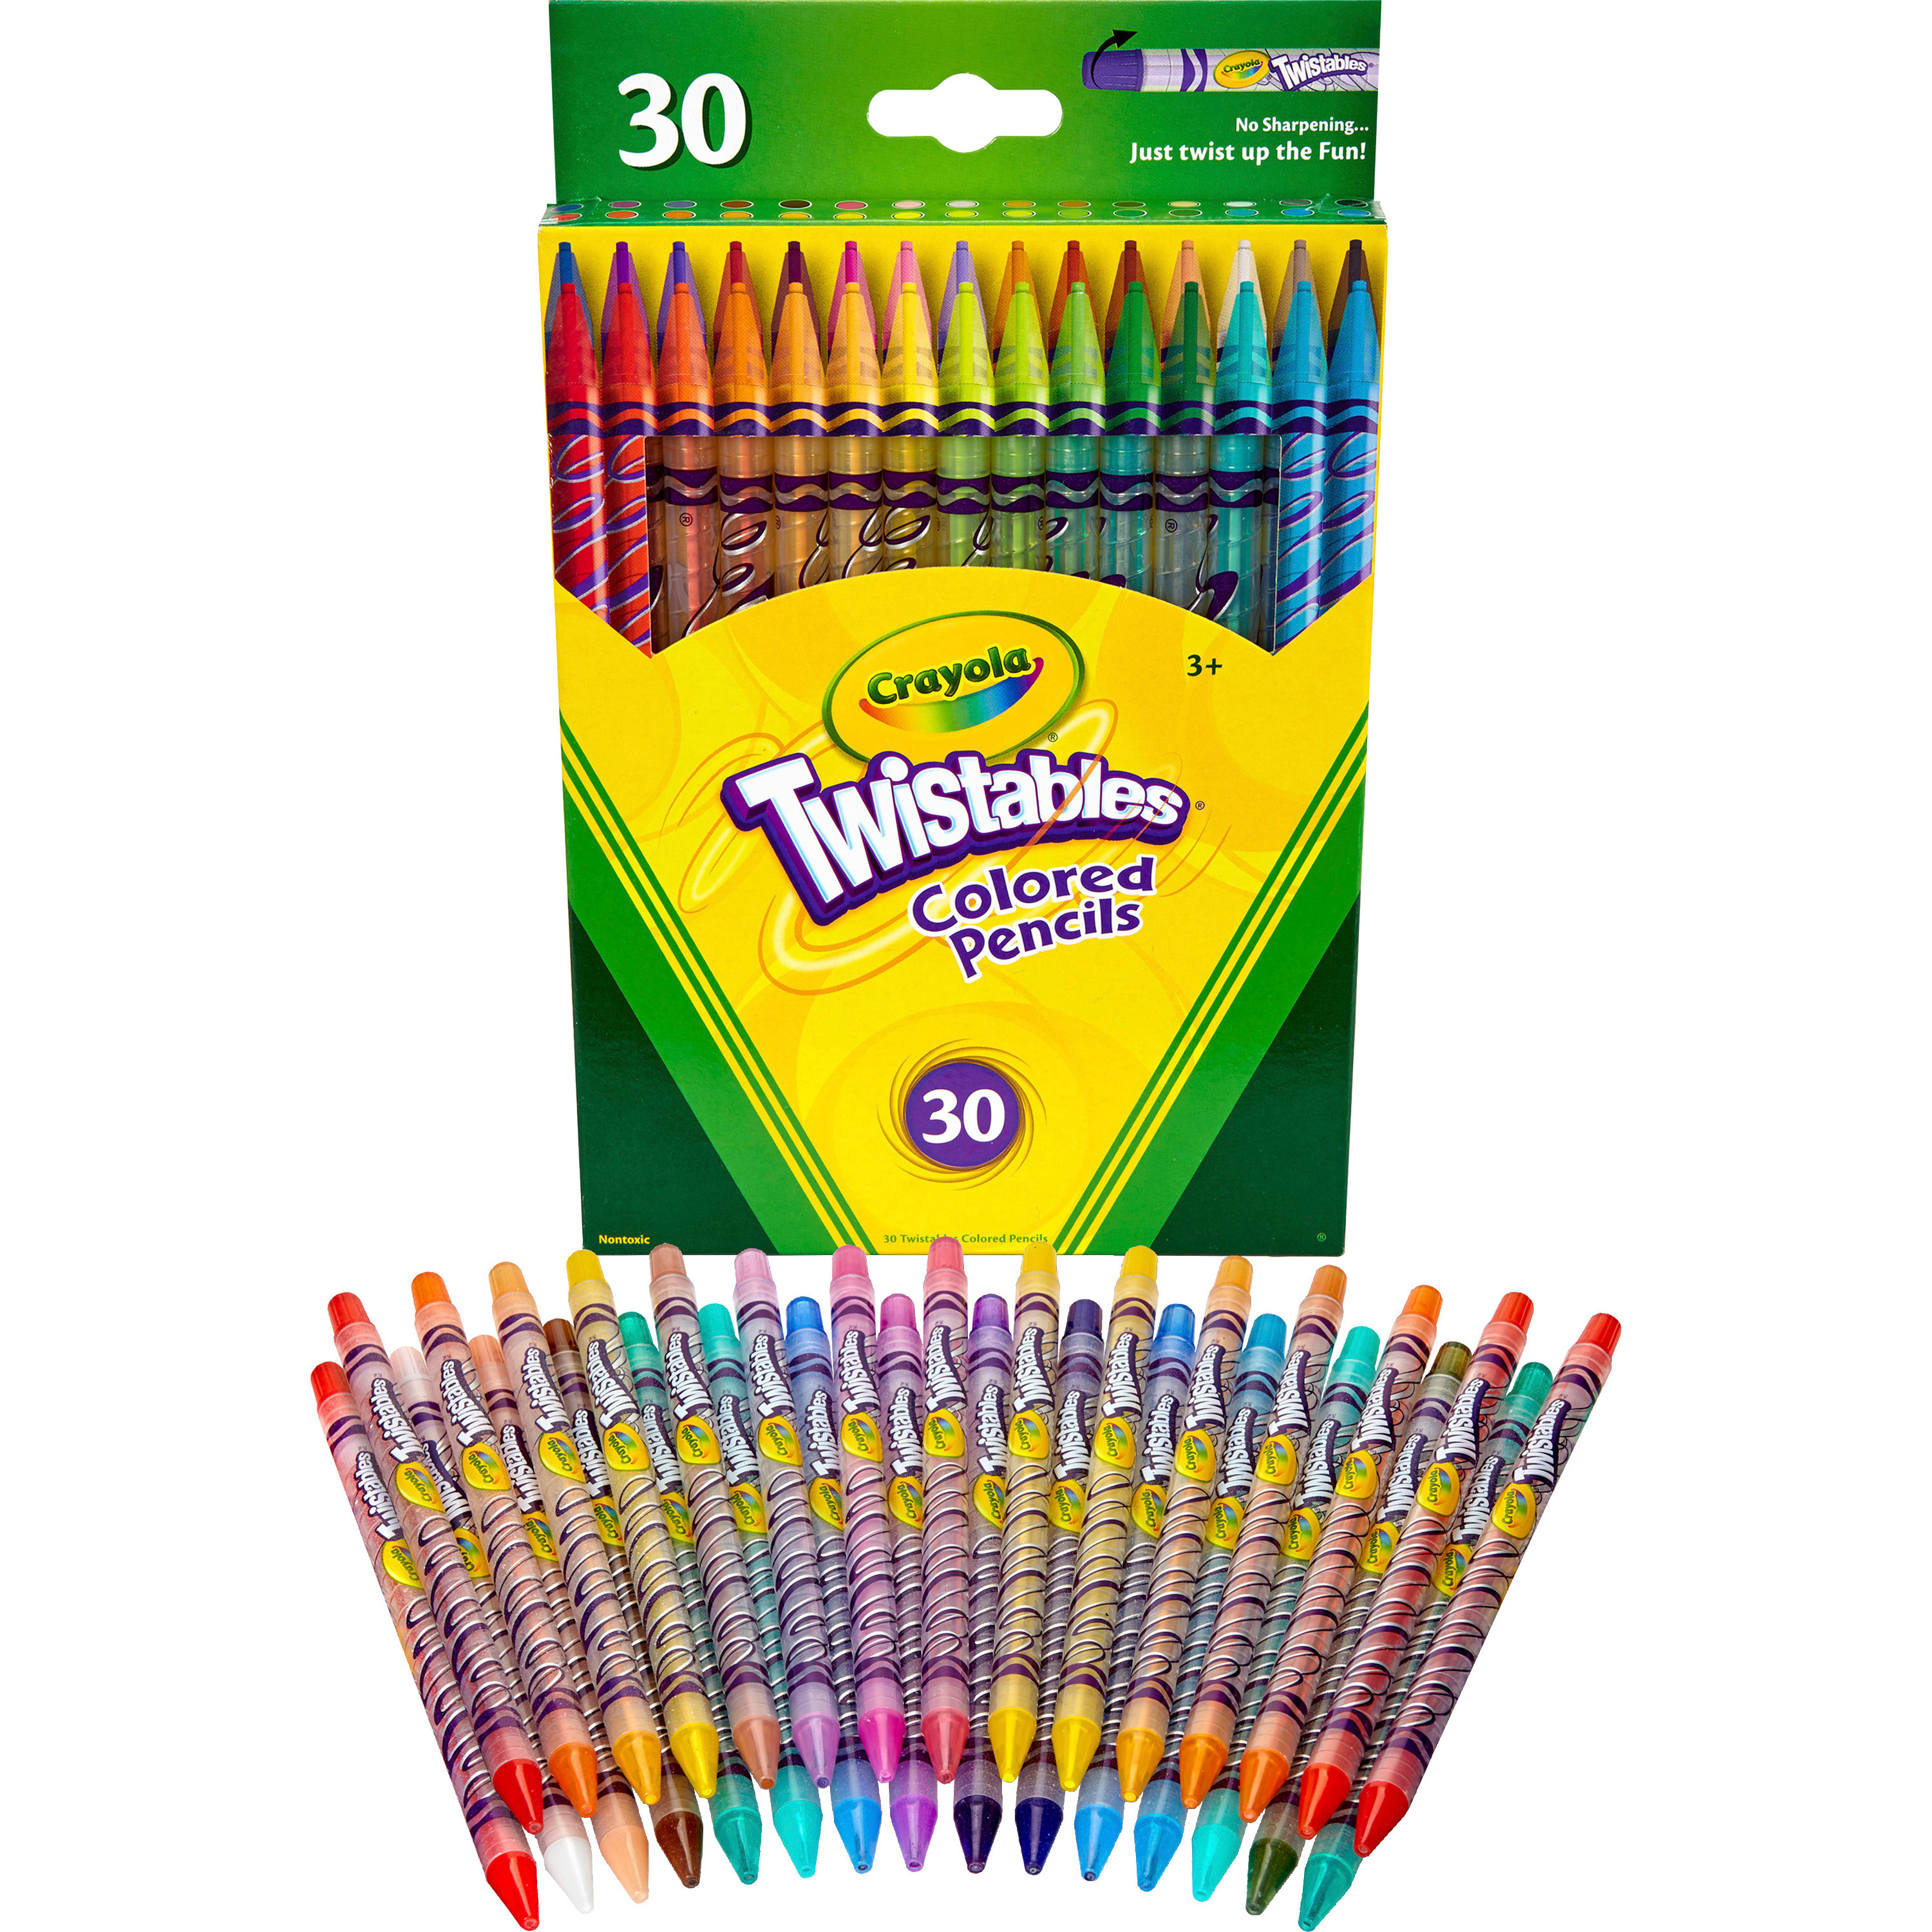 Erasable Colored Pencils, 15 Assorted Lead and Barrel Colors, 15/Set -  Zerbee